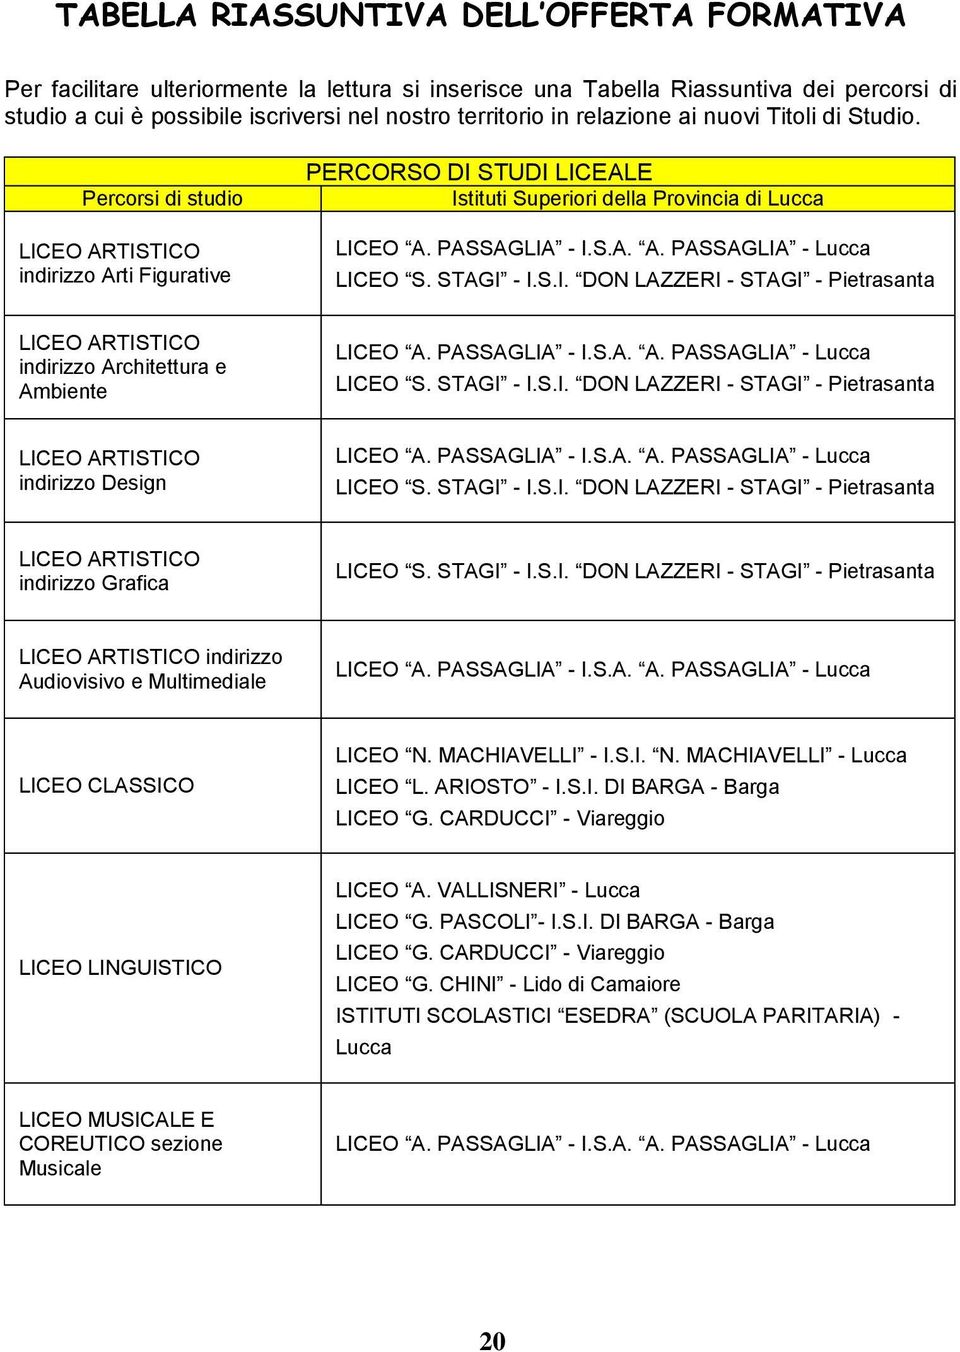 STAGI - I.S.I. DON LAZZERI - STAGI - Pietrasanta LICEO ARTISTICO indirizzo Architettura e Ambiente LICEO A. PASSAGLIA - I.S.A. A. PASSAGLIA - Lucca LICEO S. STAGI - I.S.I. DON LAZZERI - STAGI - Pietrasanta LICEO ARTISTICO indirizzo Design LICEO A.